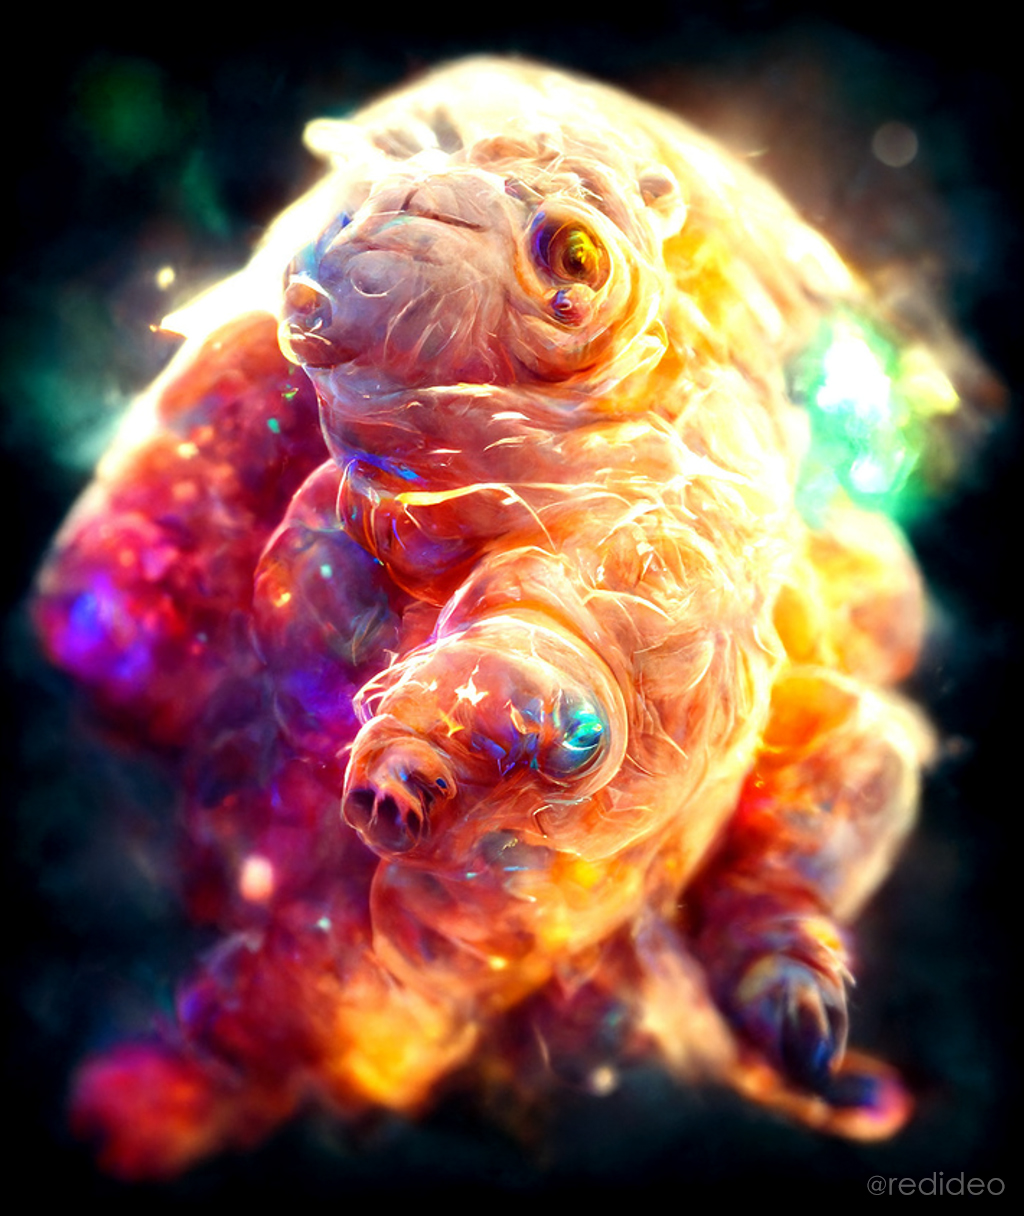 tardigrade in space